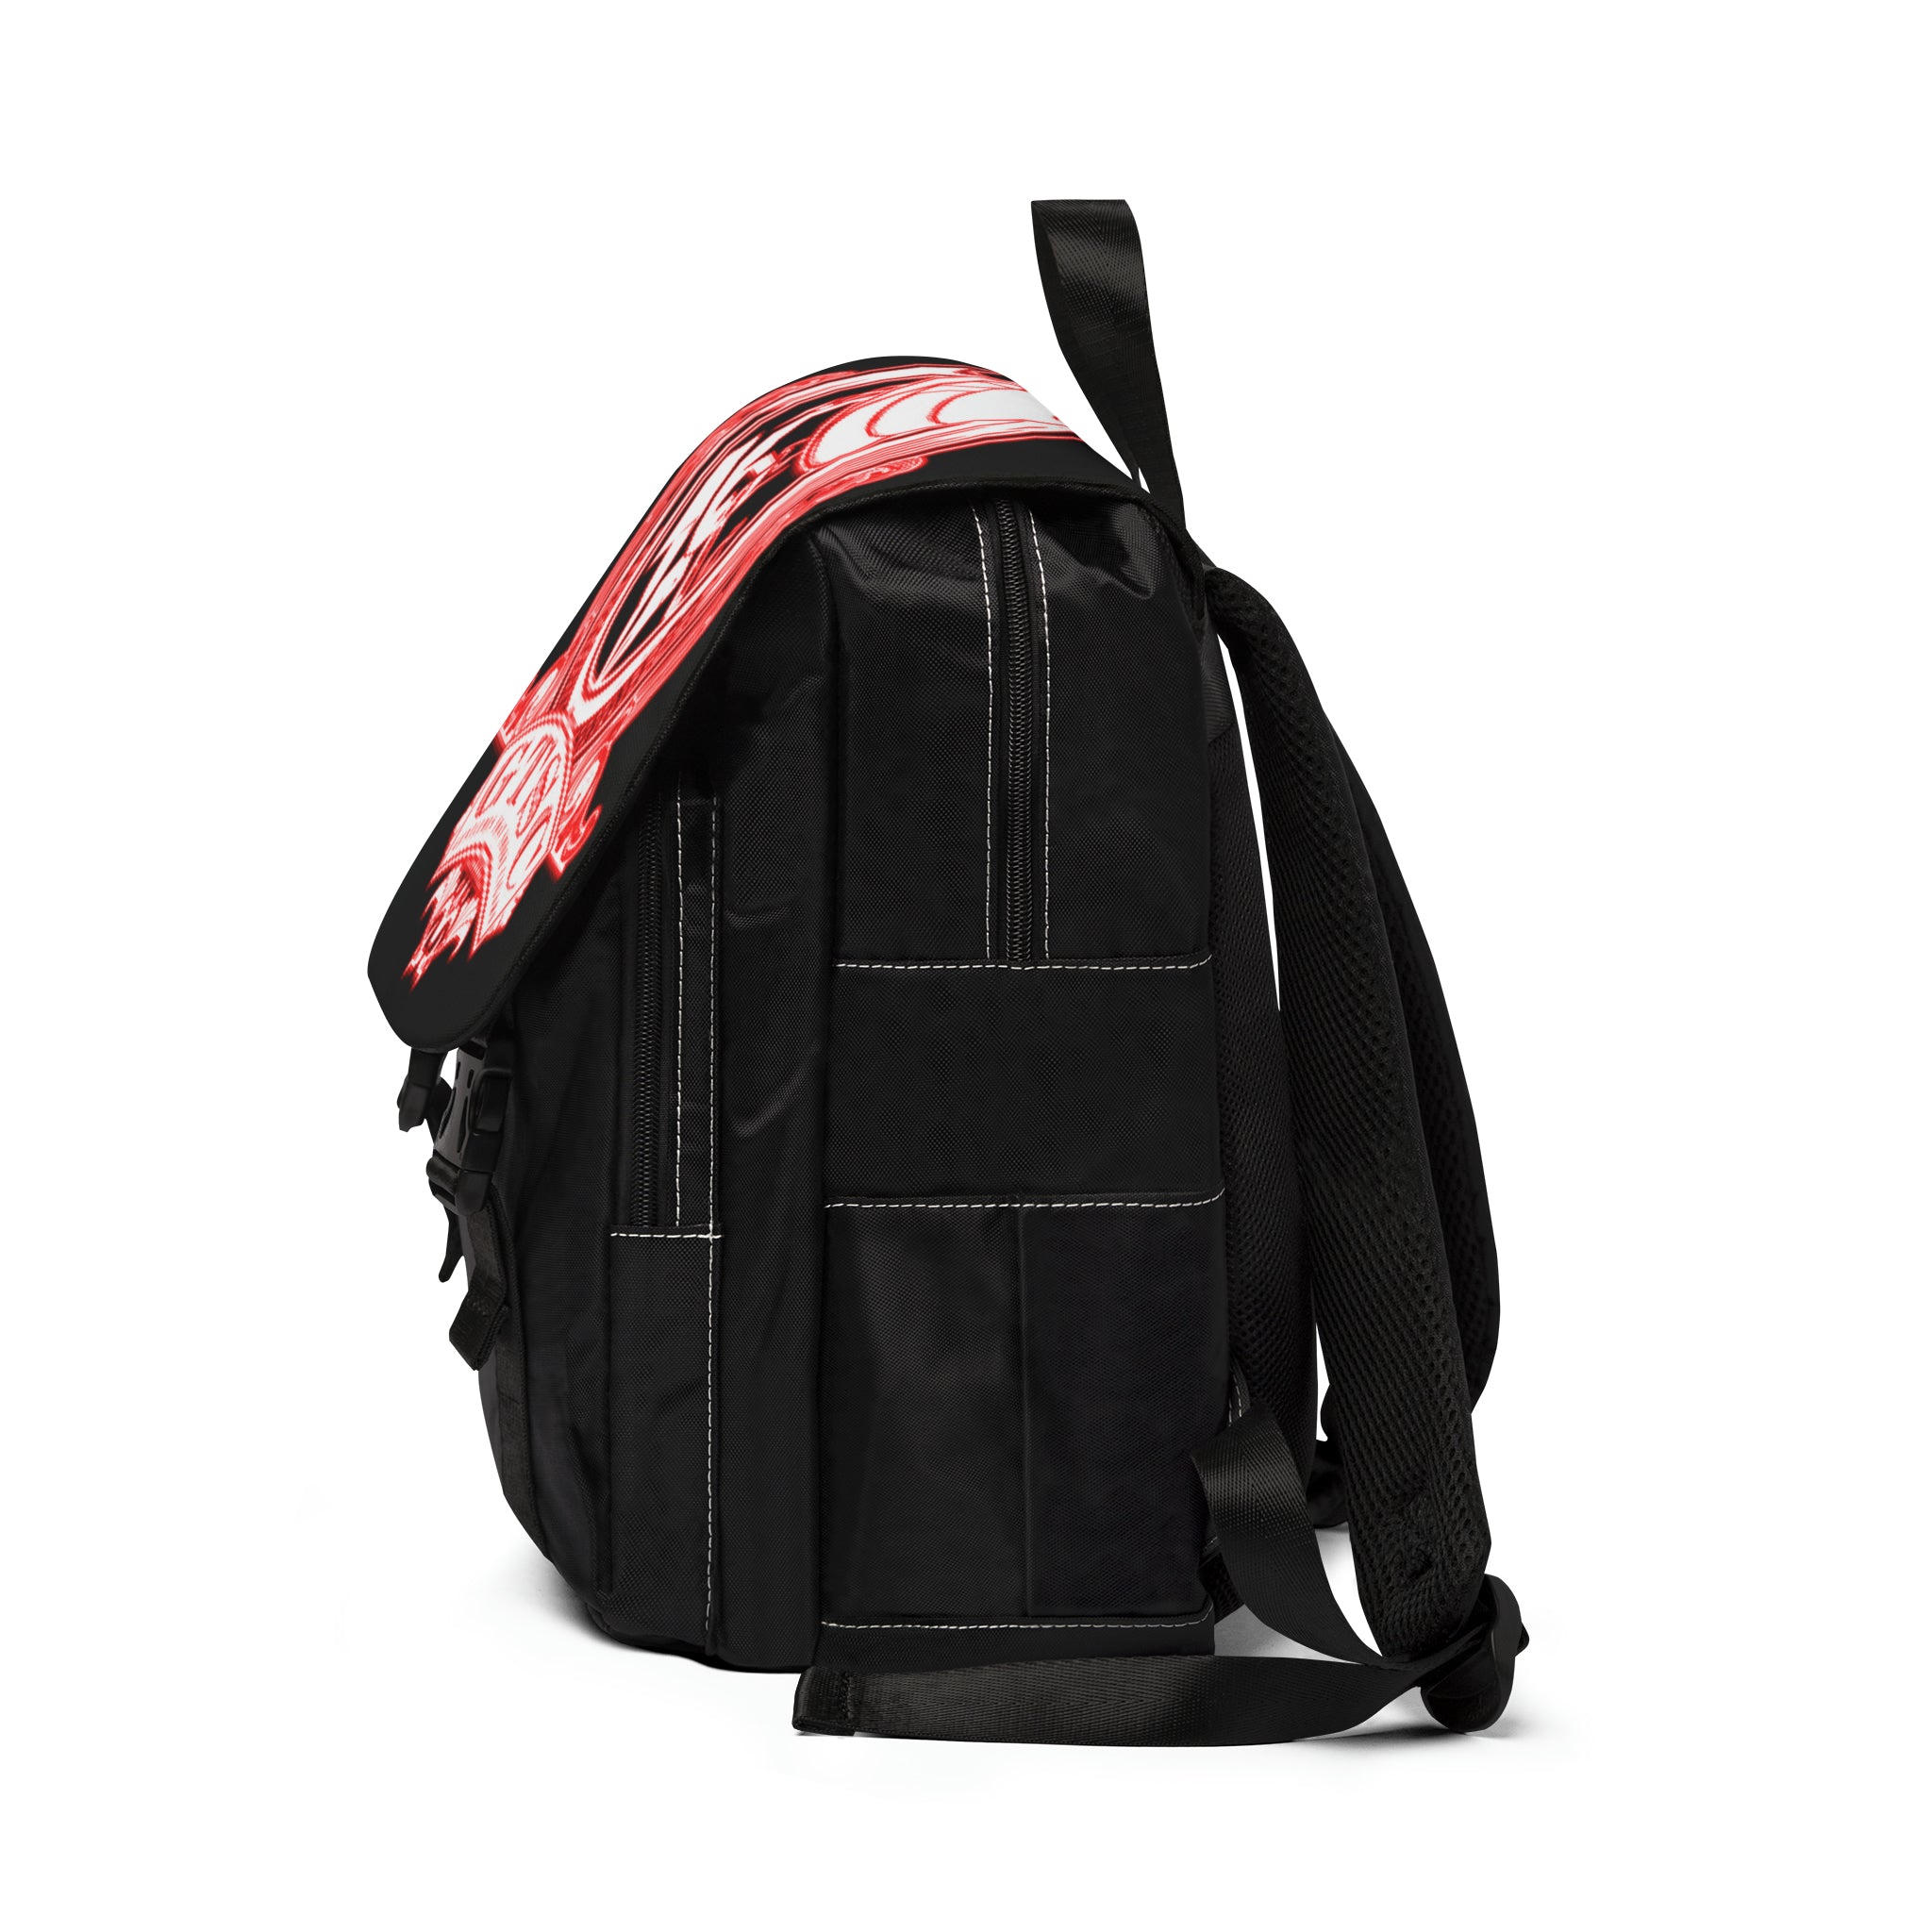 GTSC Backpack